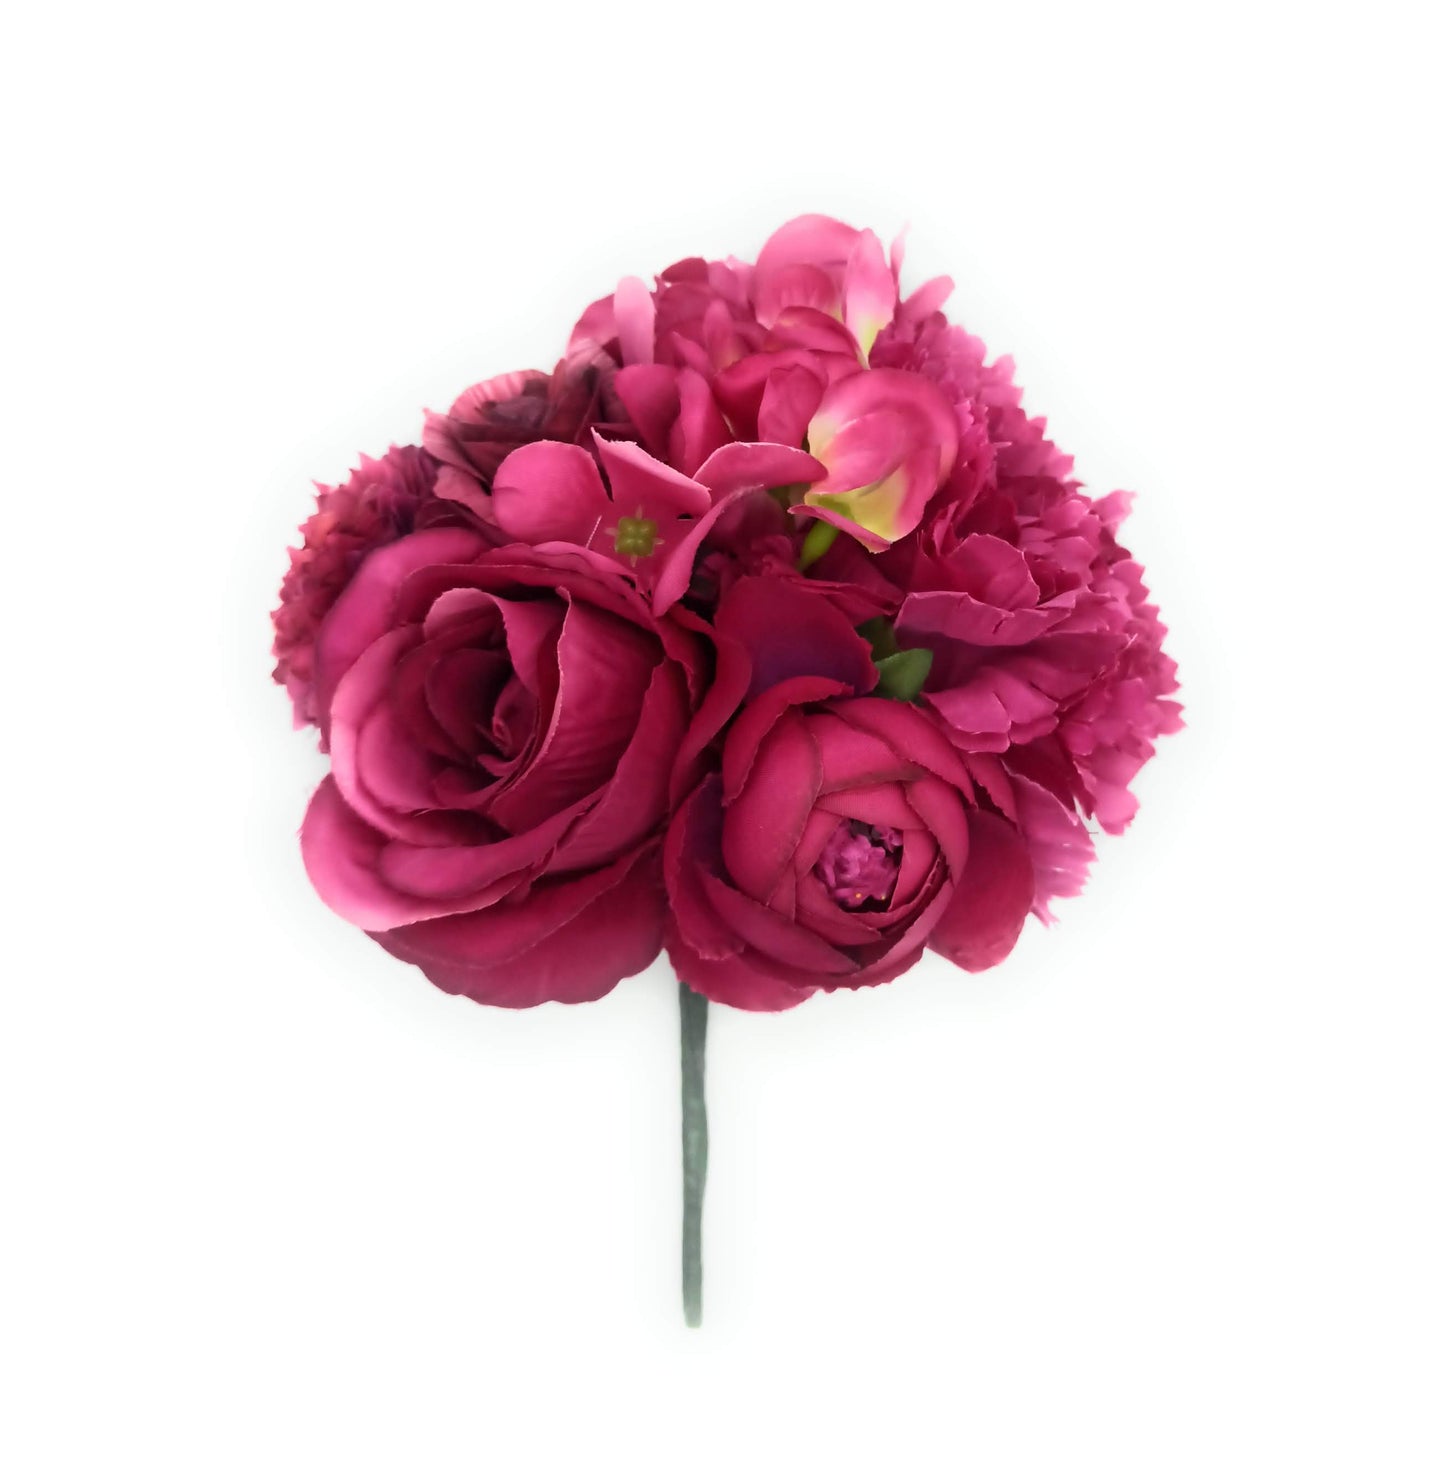 Ramillete flores flamenca - Envío 24h